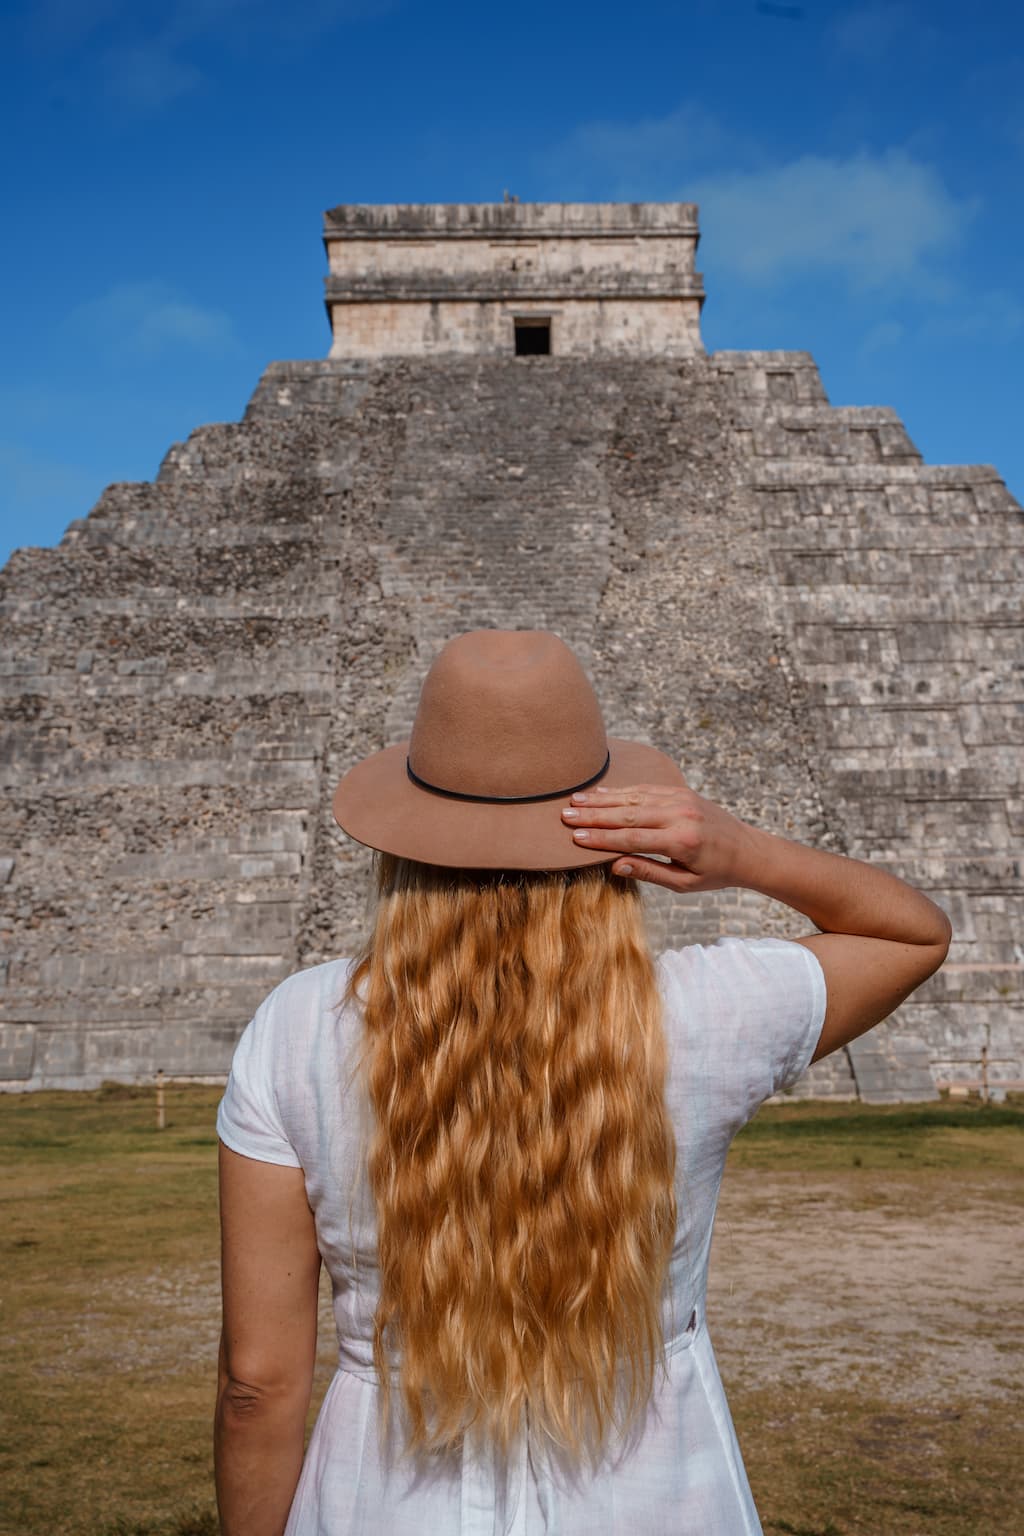 Chichen Itza ruins are the best ruins in Yucatan.